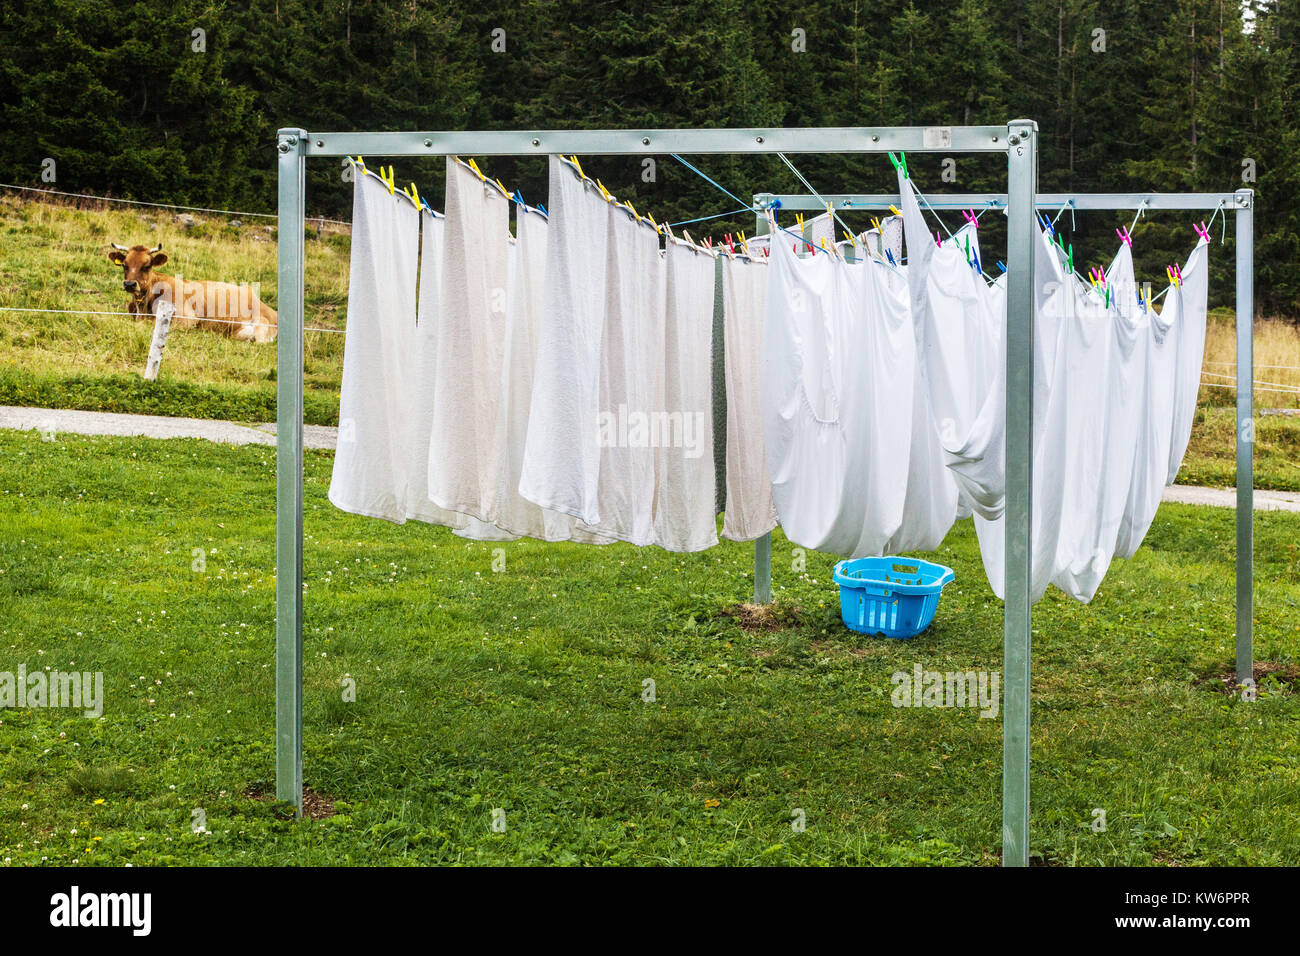 Wäschetrocknung auf Wäscheständer Kuh auf Wiese Wäscherei hängt an einer Wäscheleine Trocknung Wäsche Frische Luftblätter Außenansicht des ländlichen Raums Stockfoto